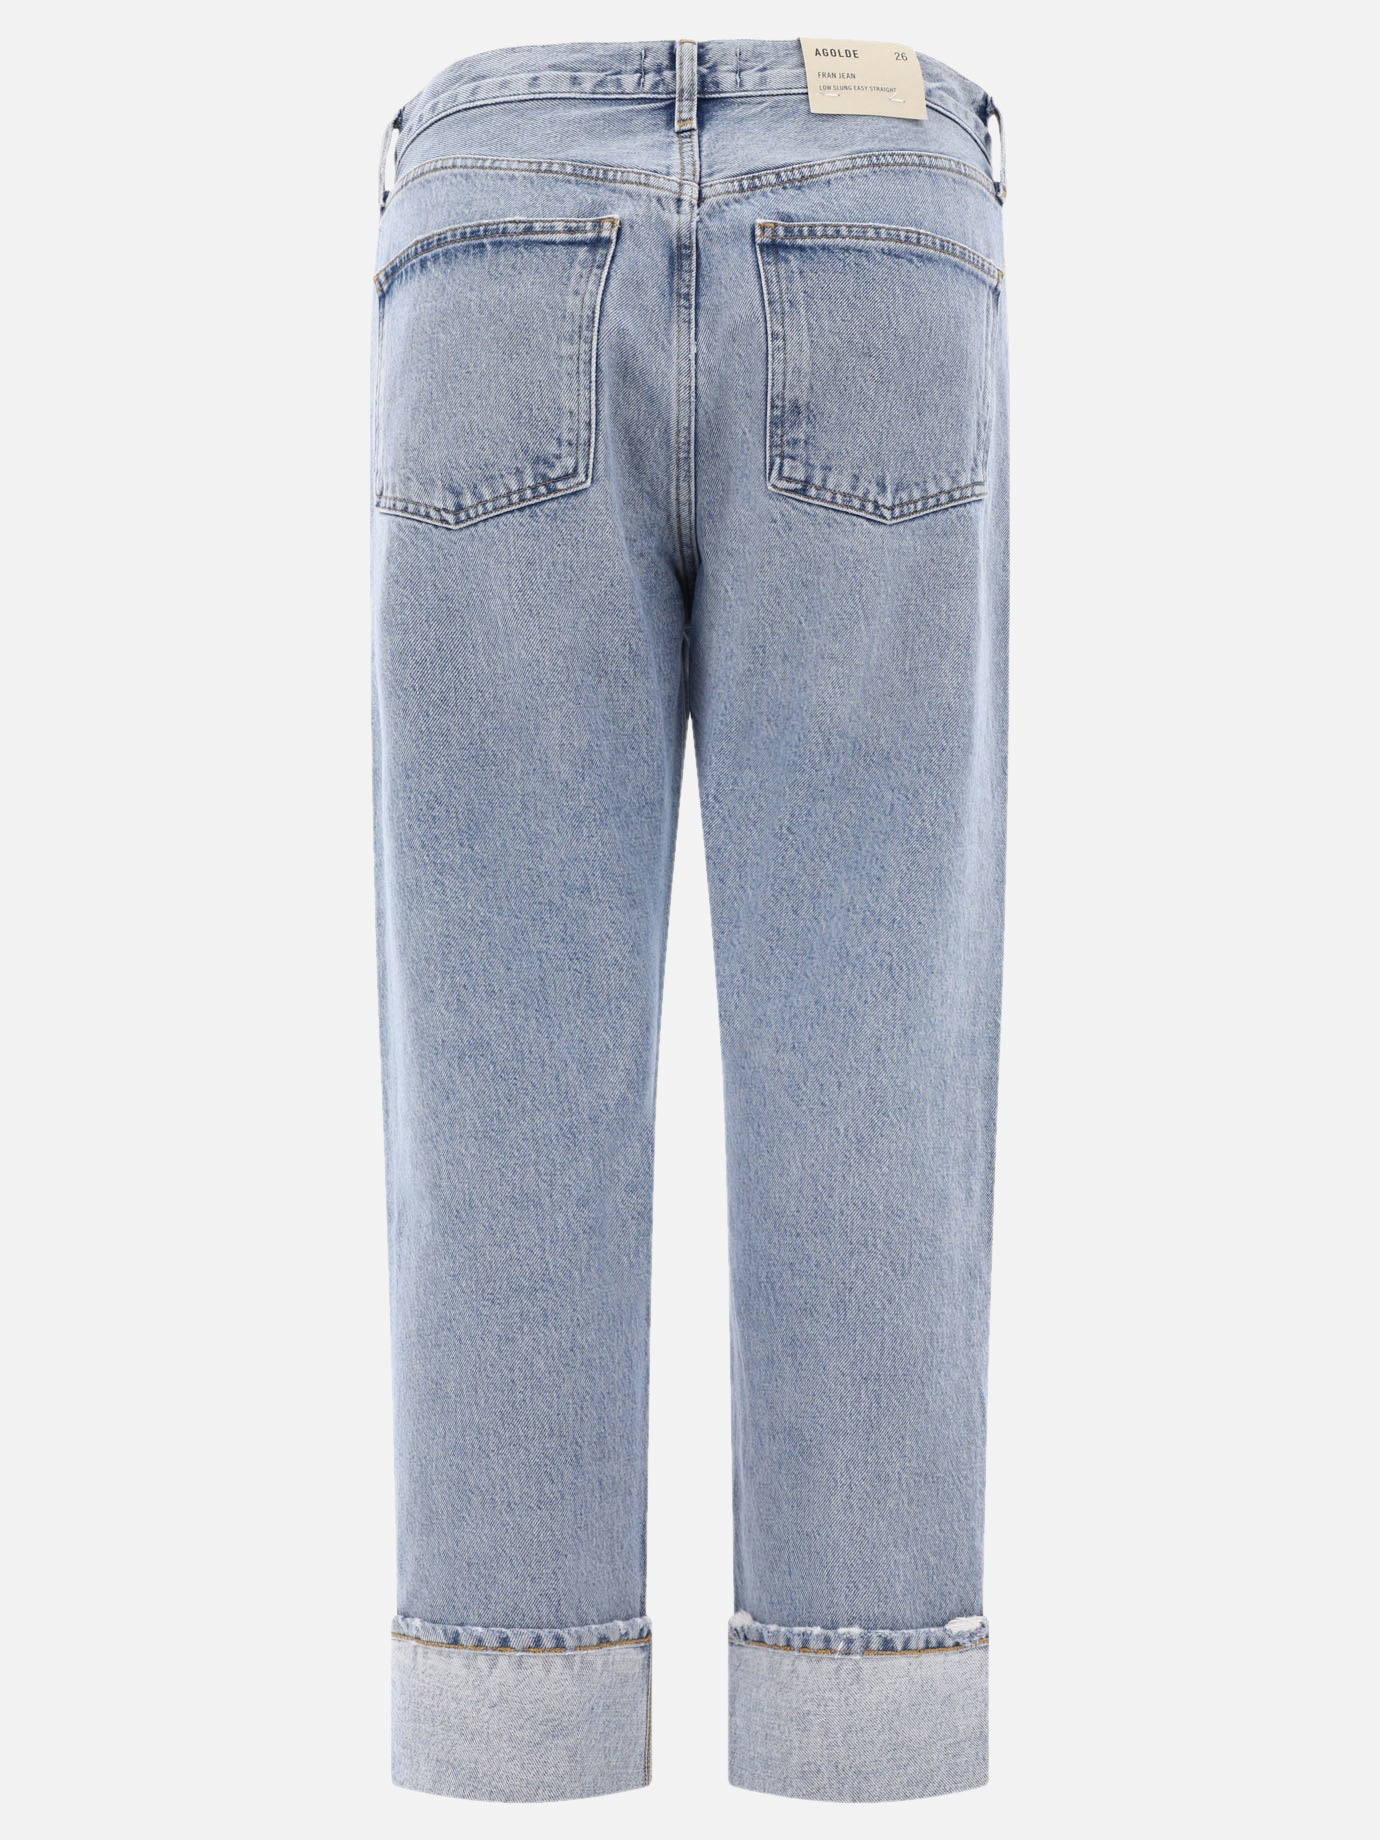 "Fran Low Slung" jeans